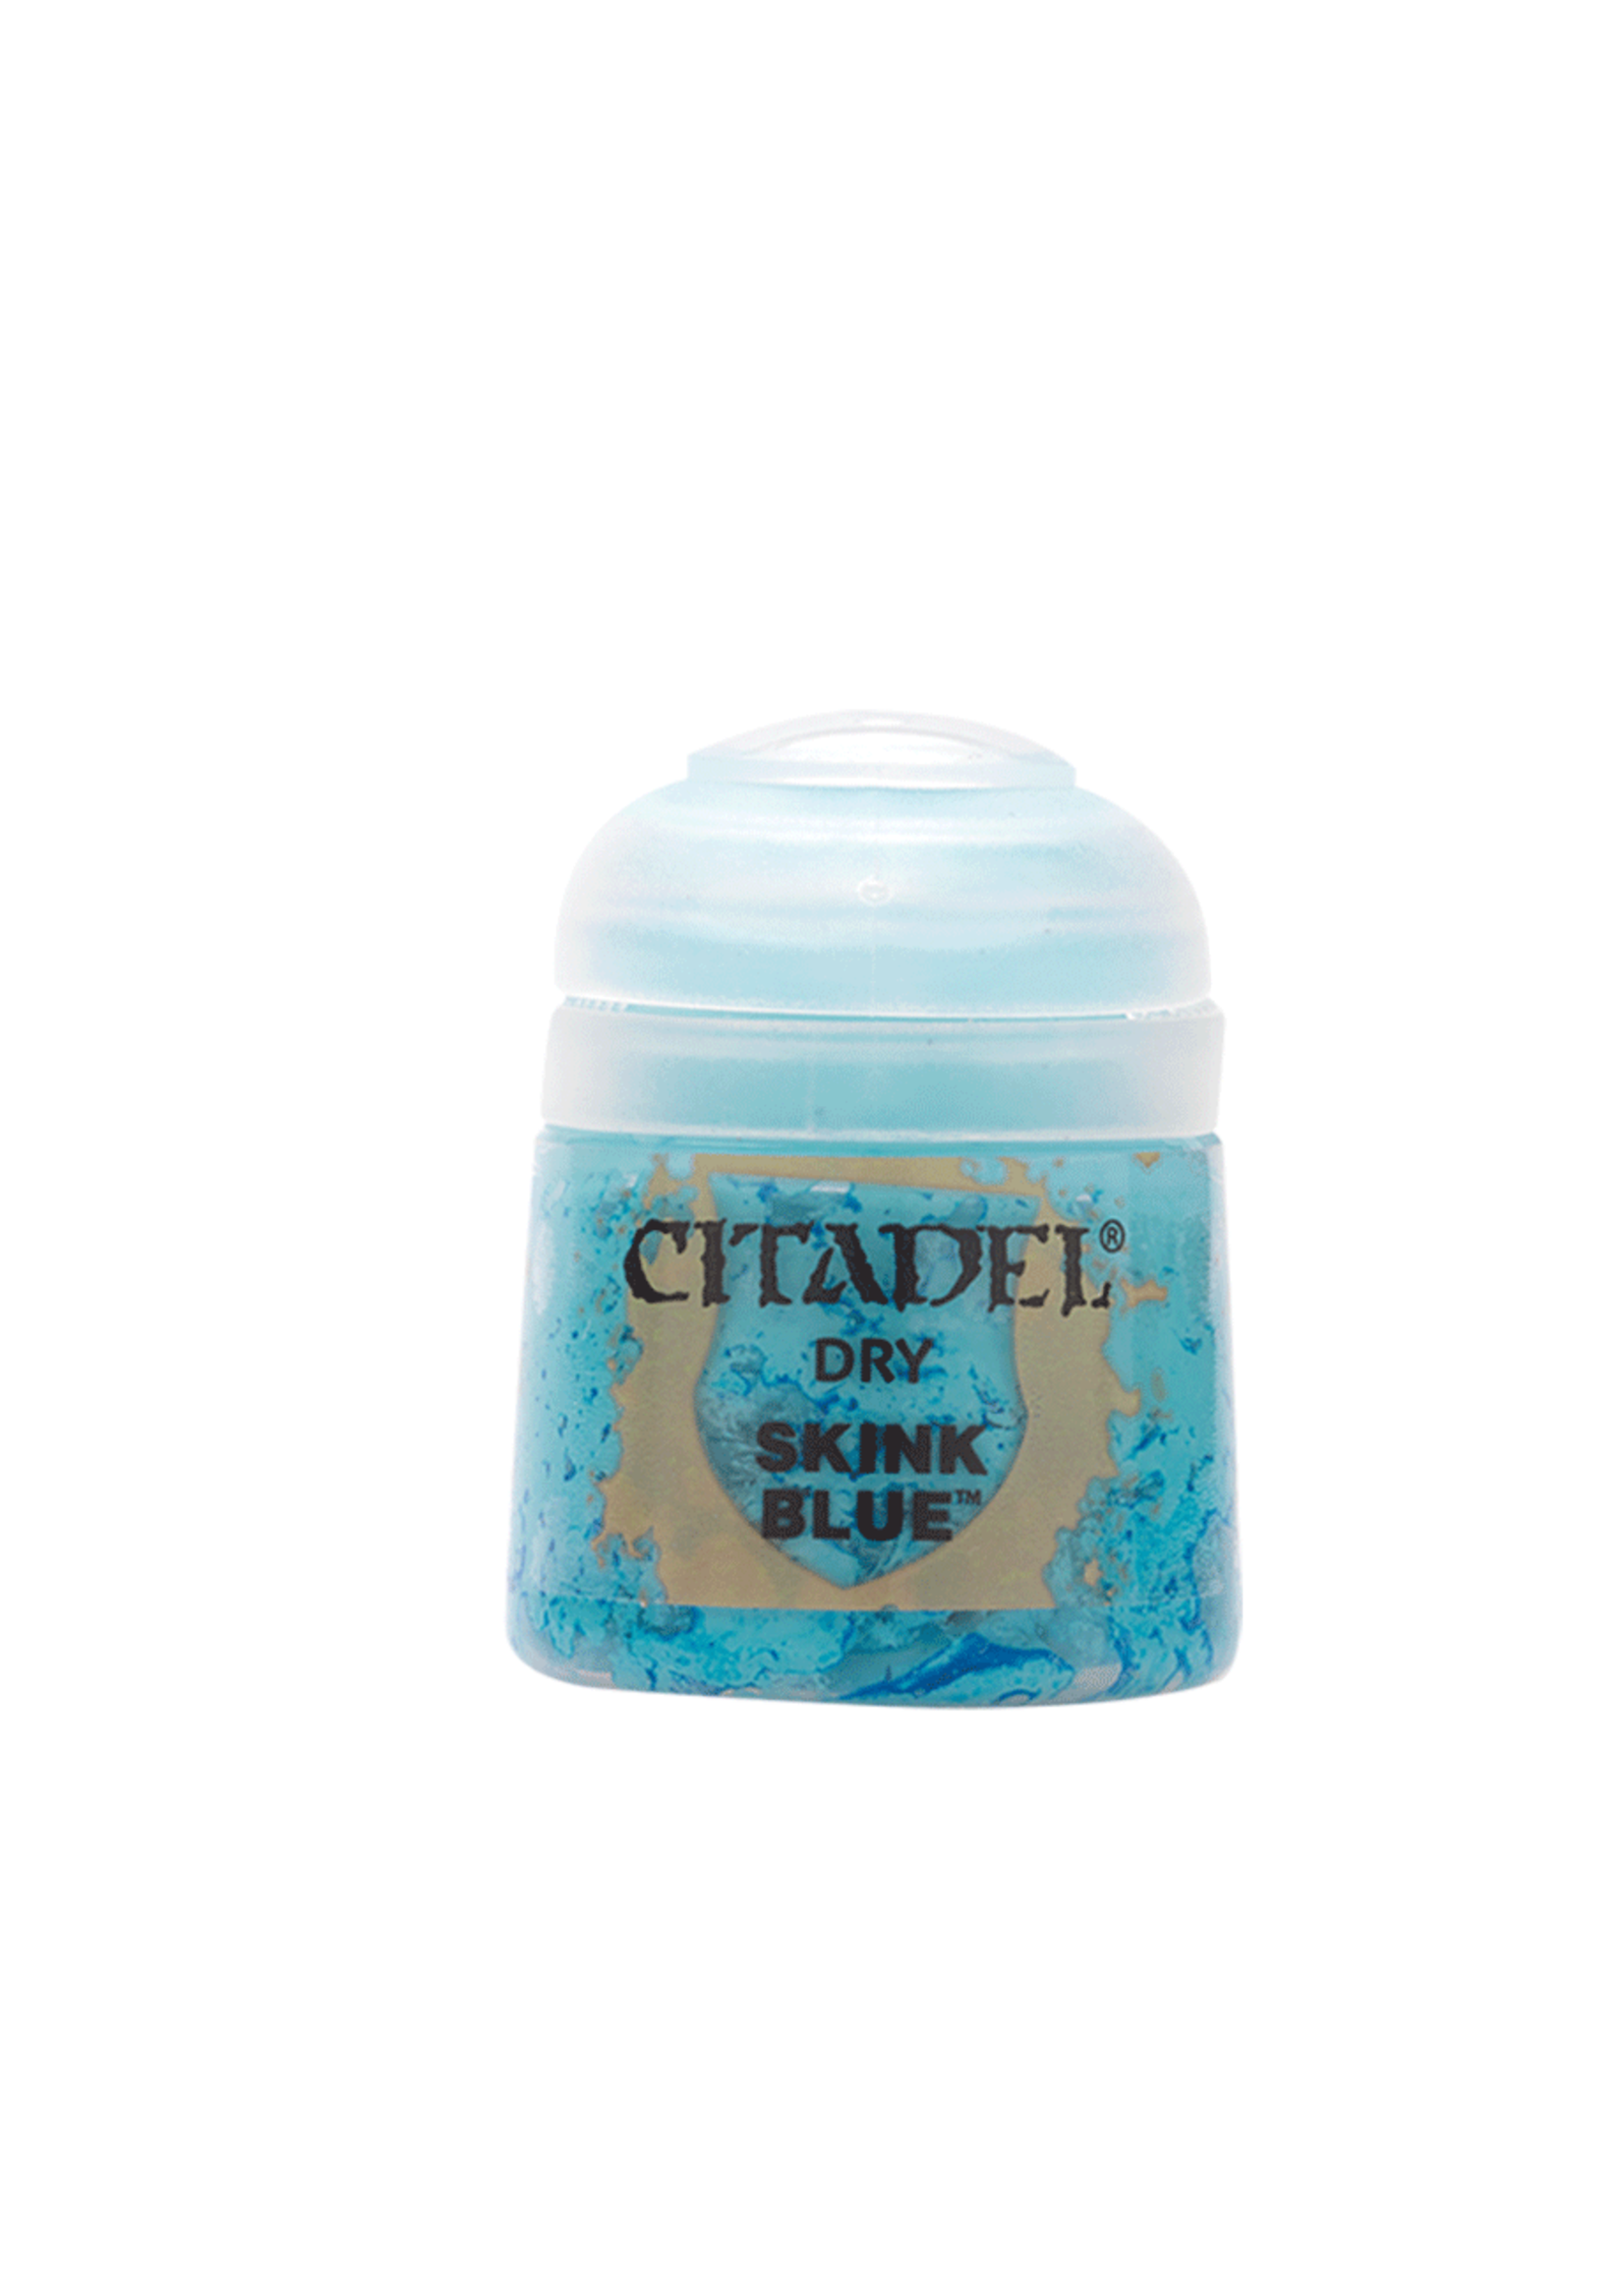 Citadel Dry Skink Blue